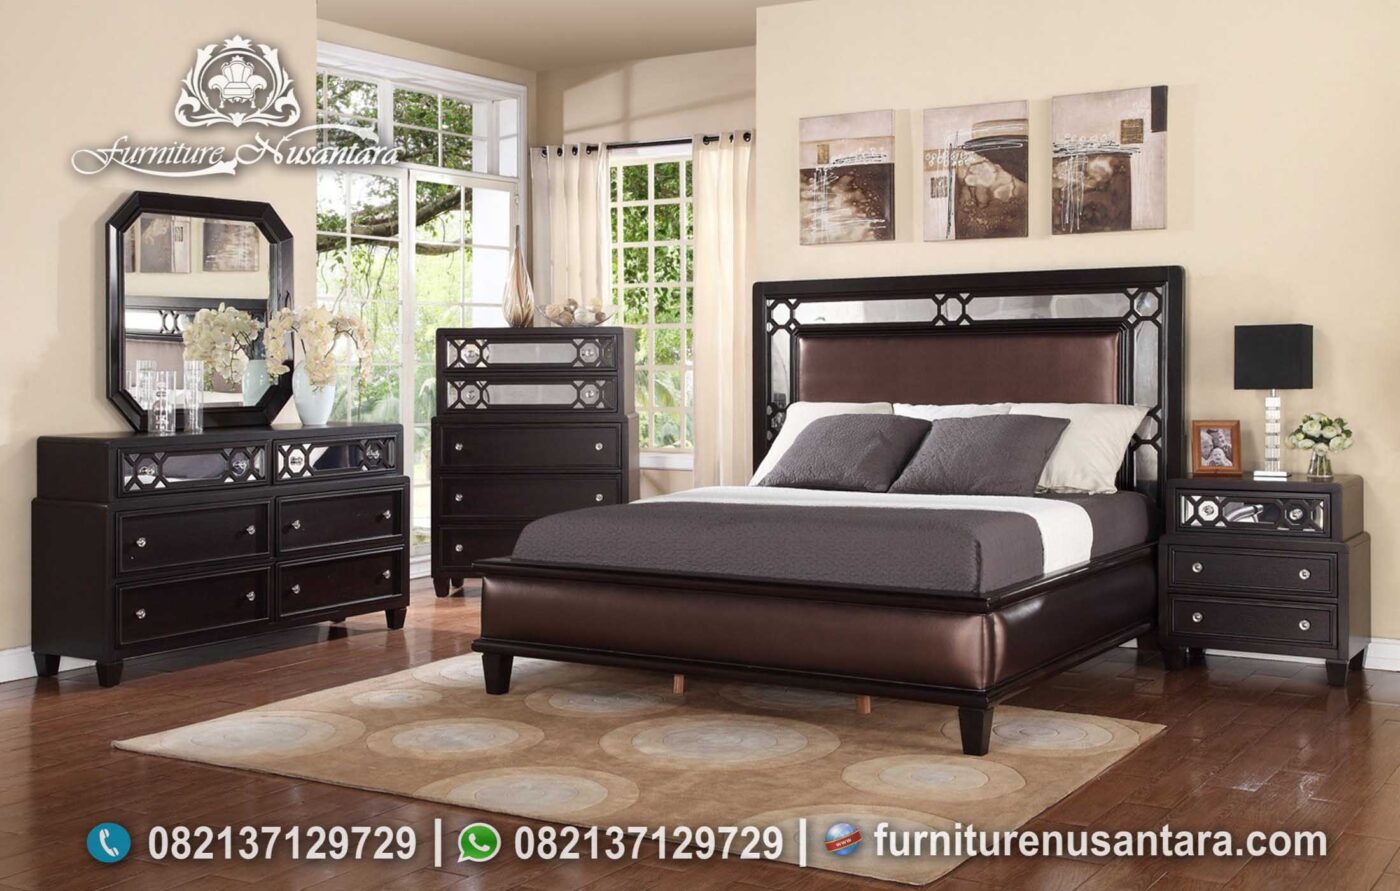 Desain Terbaru Kamar Set Minimalis Modern Casual KS-224, Furniture Nusantara